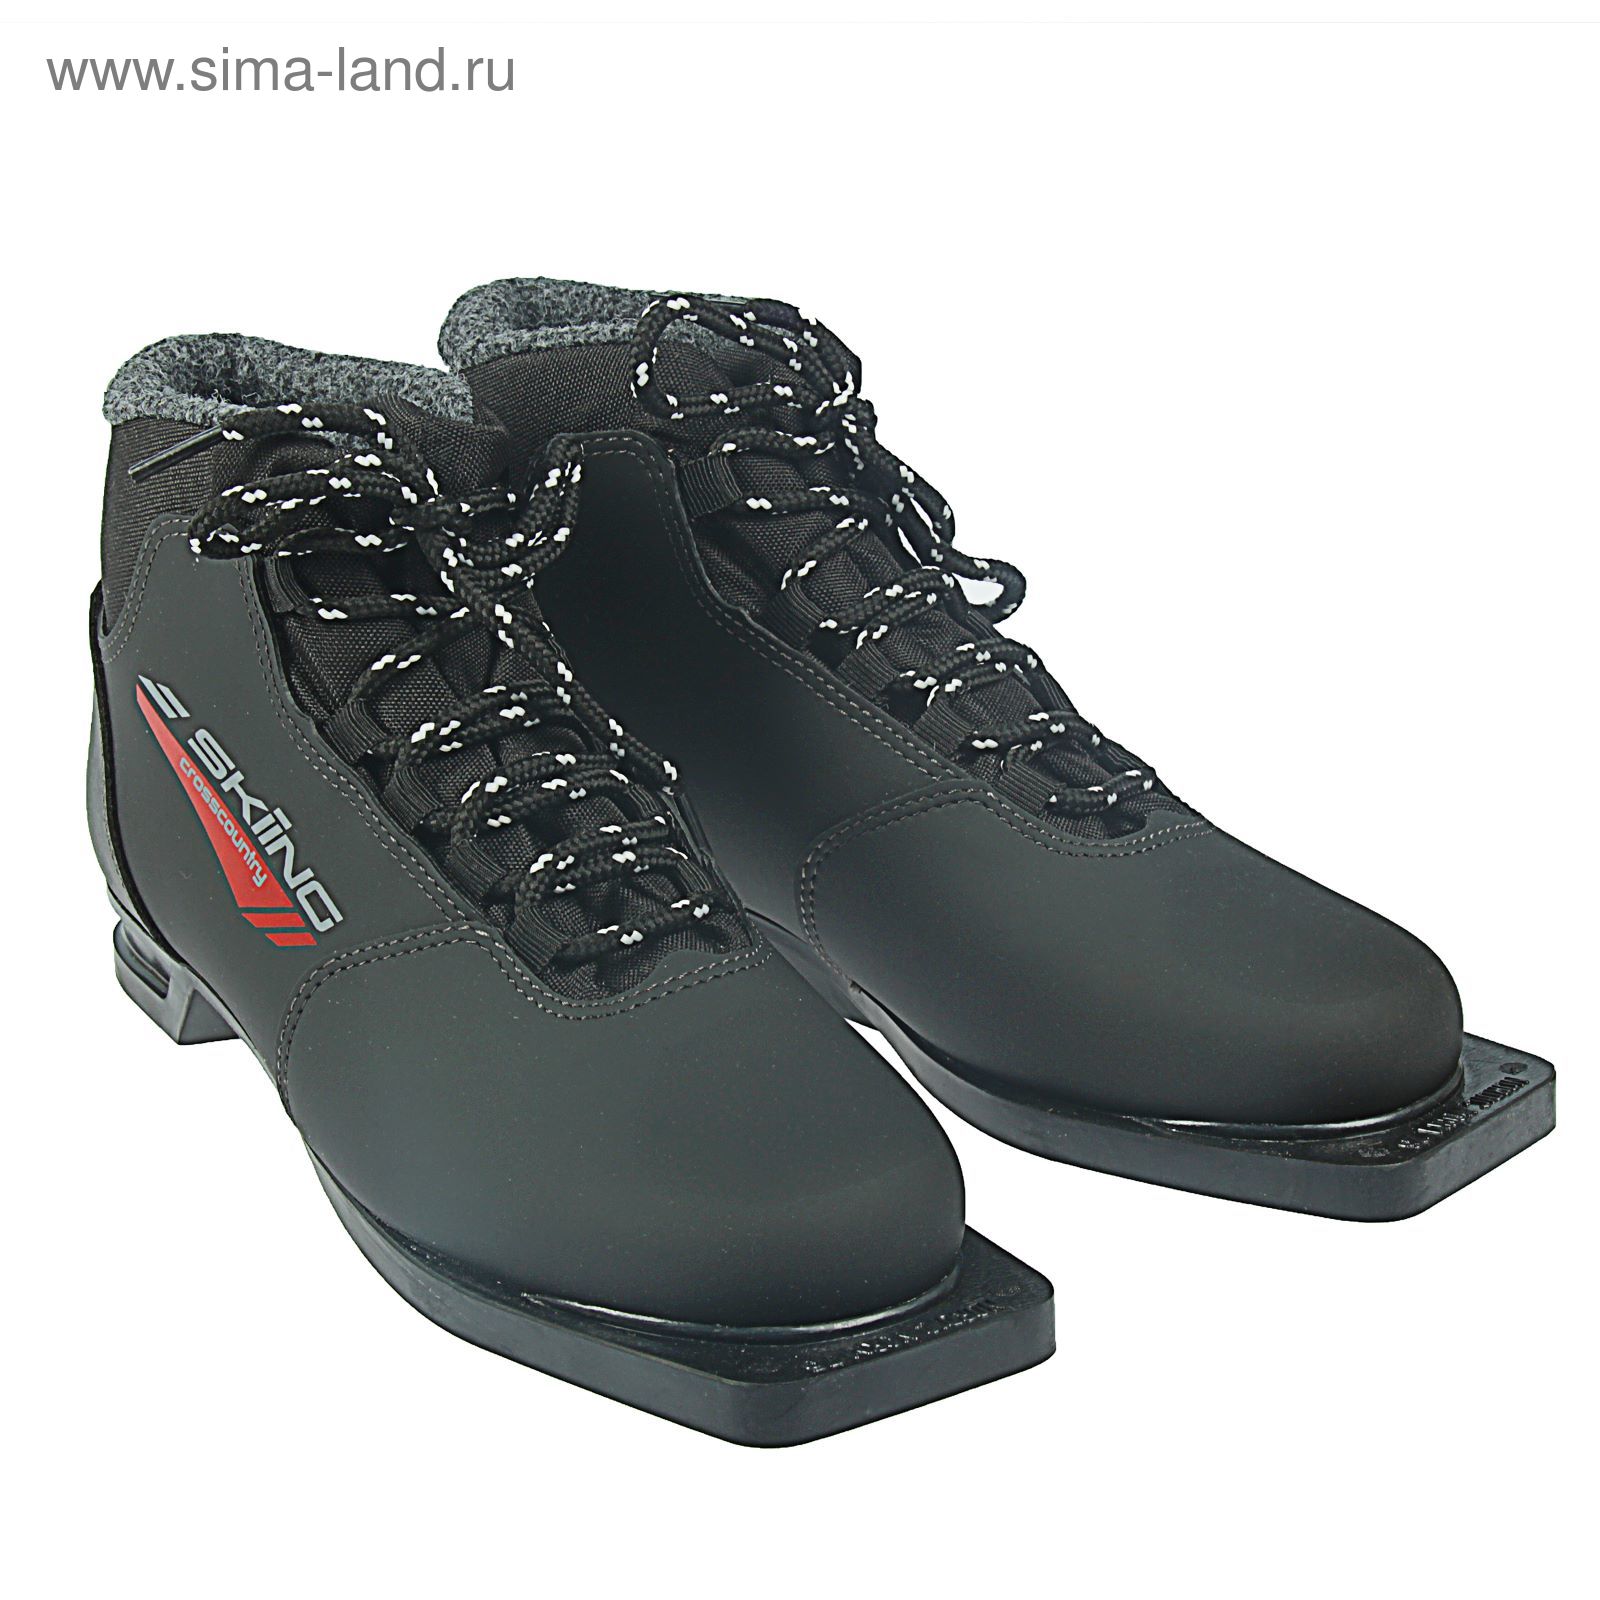 Ботинки лыжные ТРЕК Skiing НКNN75 (черный, лого красный), р.40